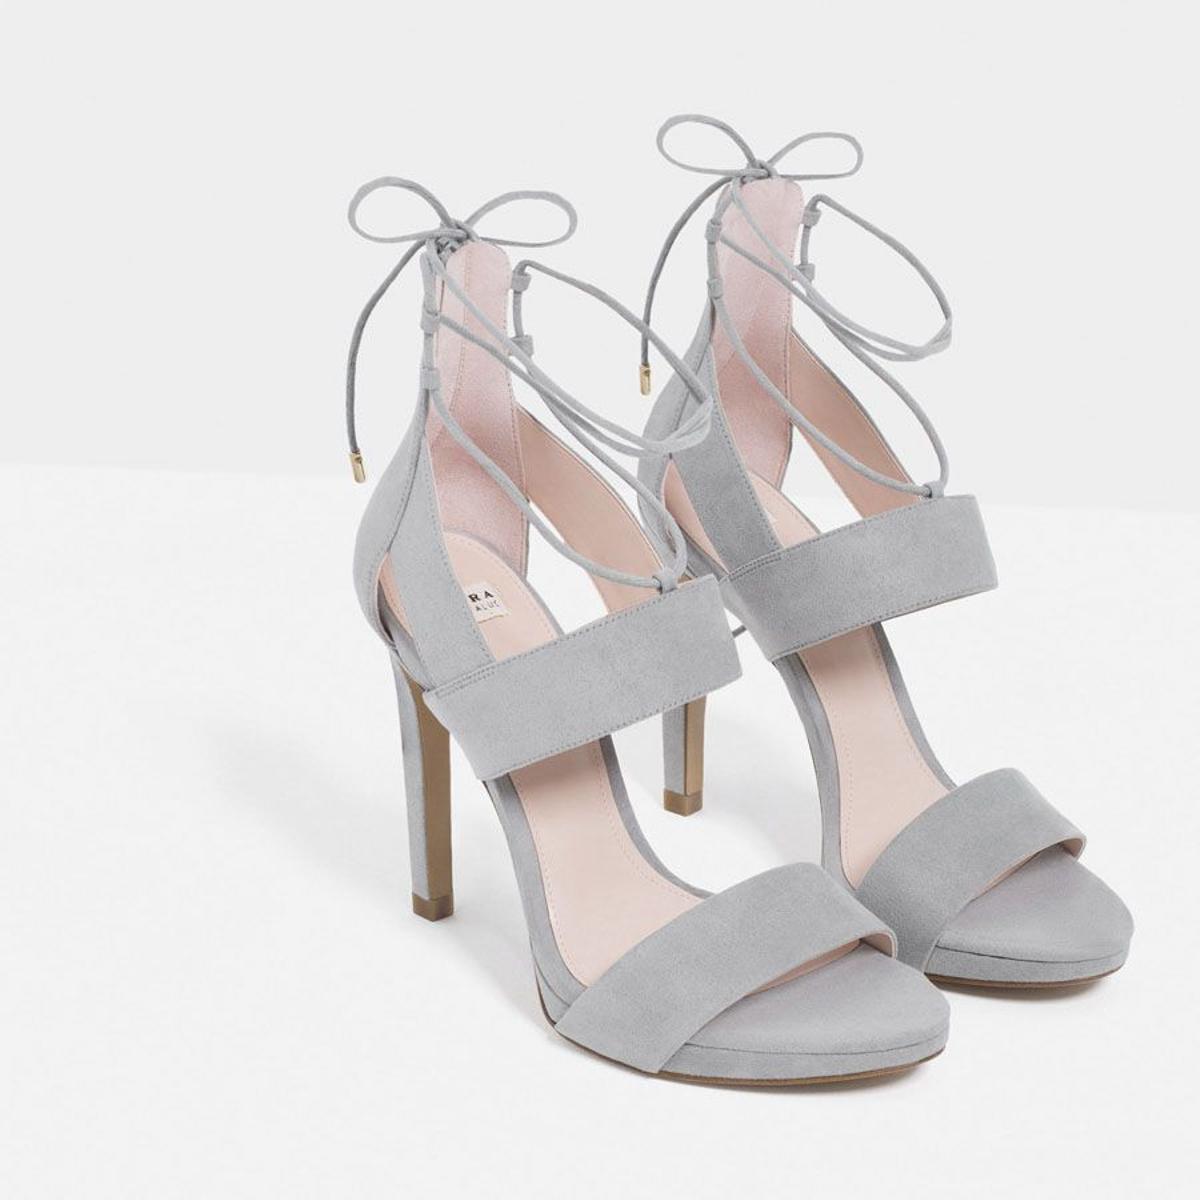 Rebajas 2017- los zapatos de Zara que vas a querer:  sandalia grey tacón fino